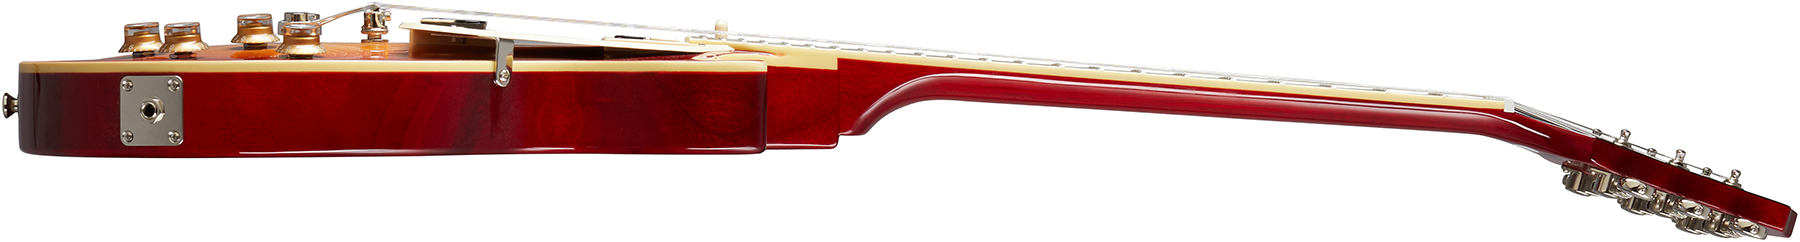 Epiphone Les Paul Classic Modern 2020 2h Ht Lau - Heritage Cherry Sunburst - Guitarra eléctrica de corte único. - Variation 2